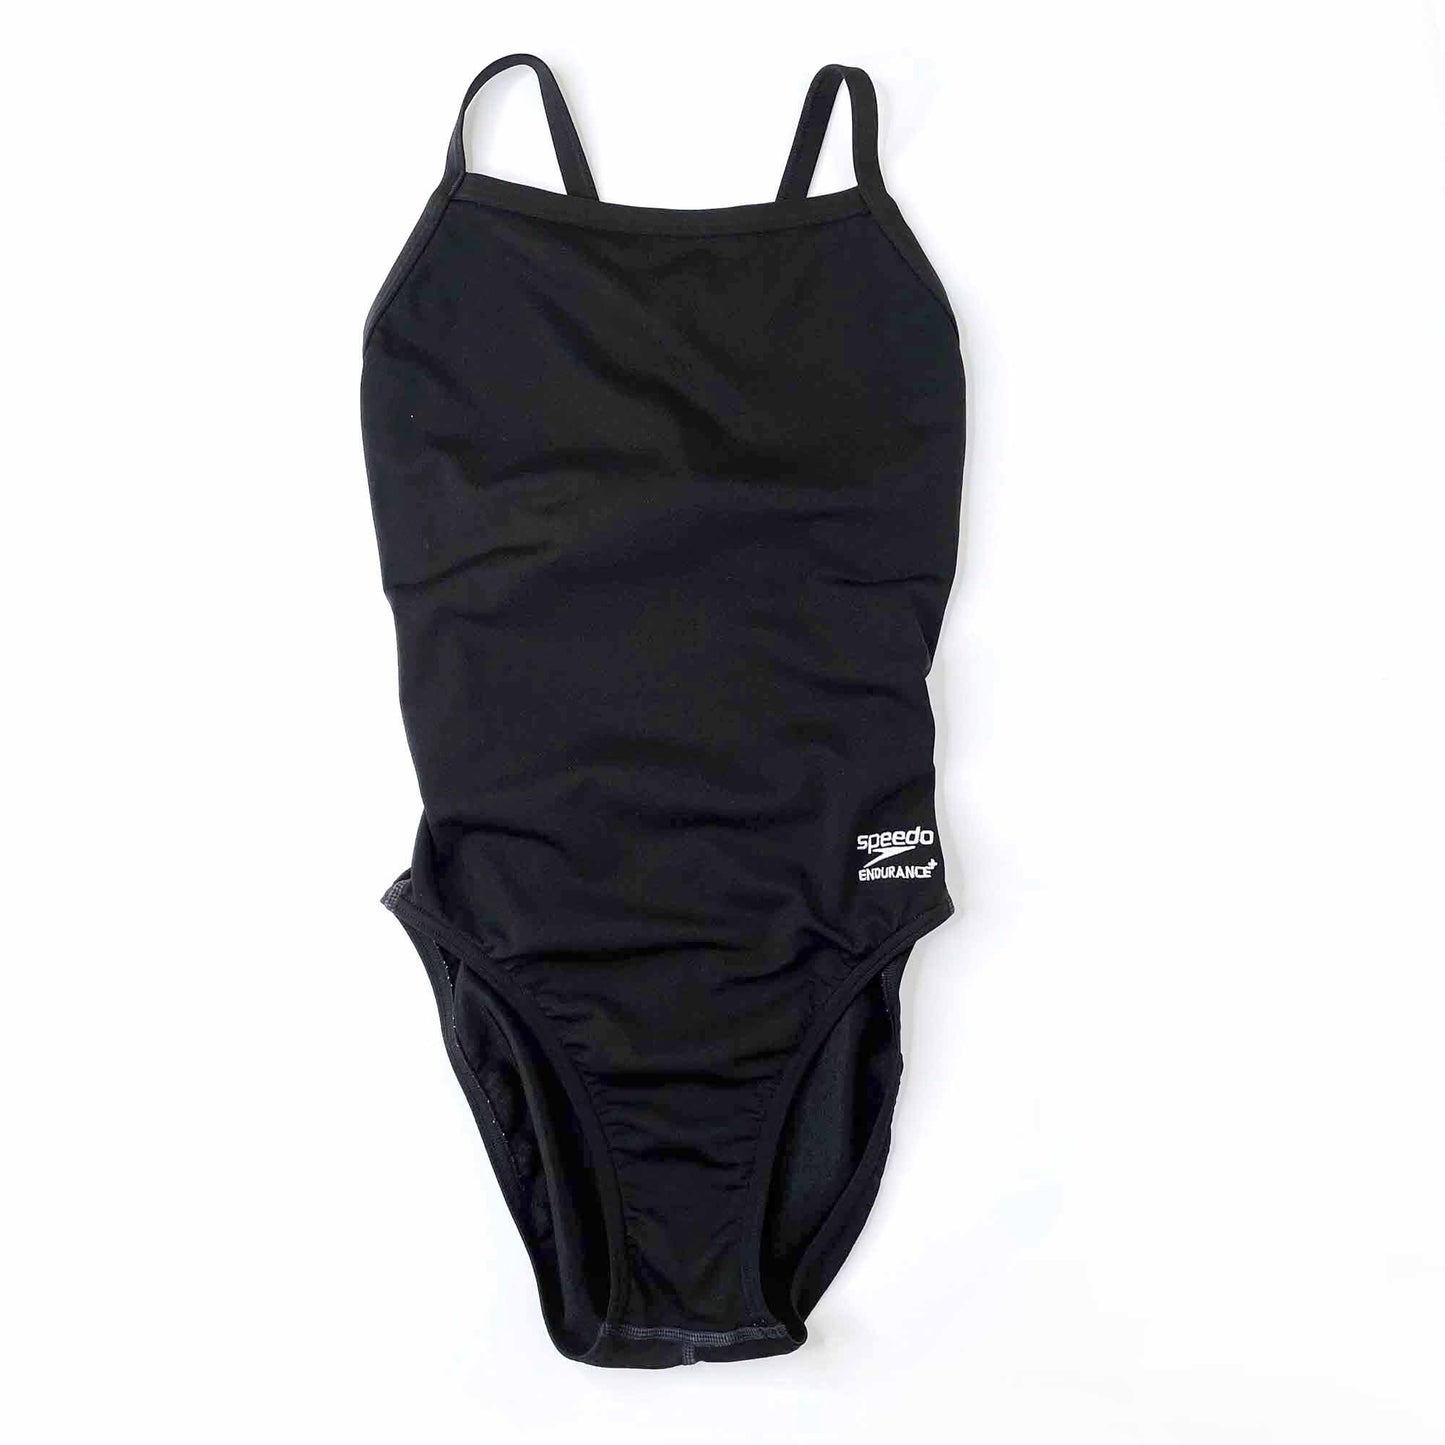 speedo flyback pro endurance training swimsuit - size 30